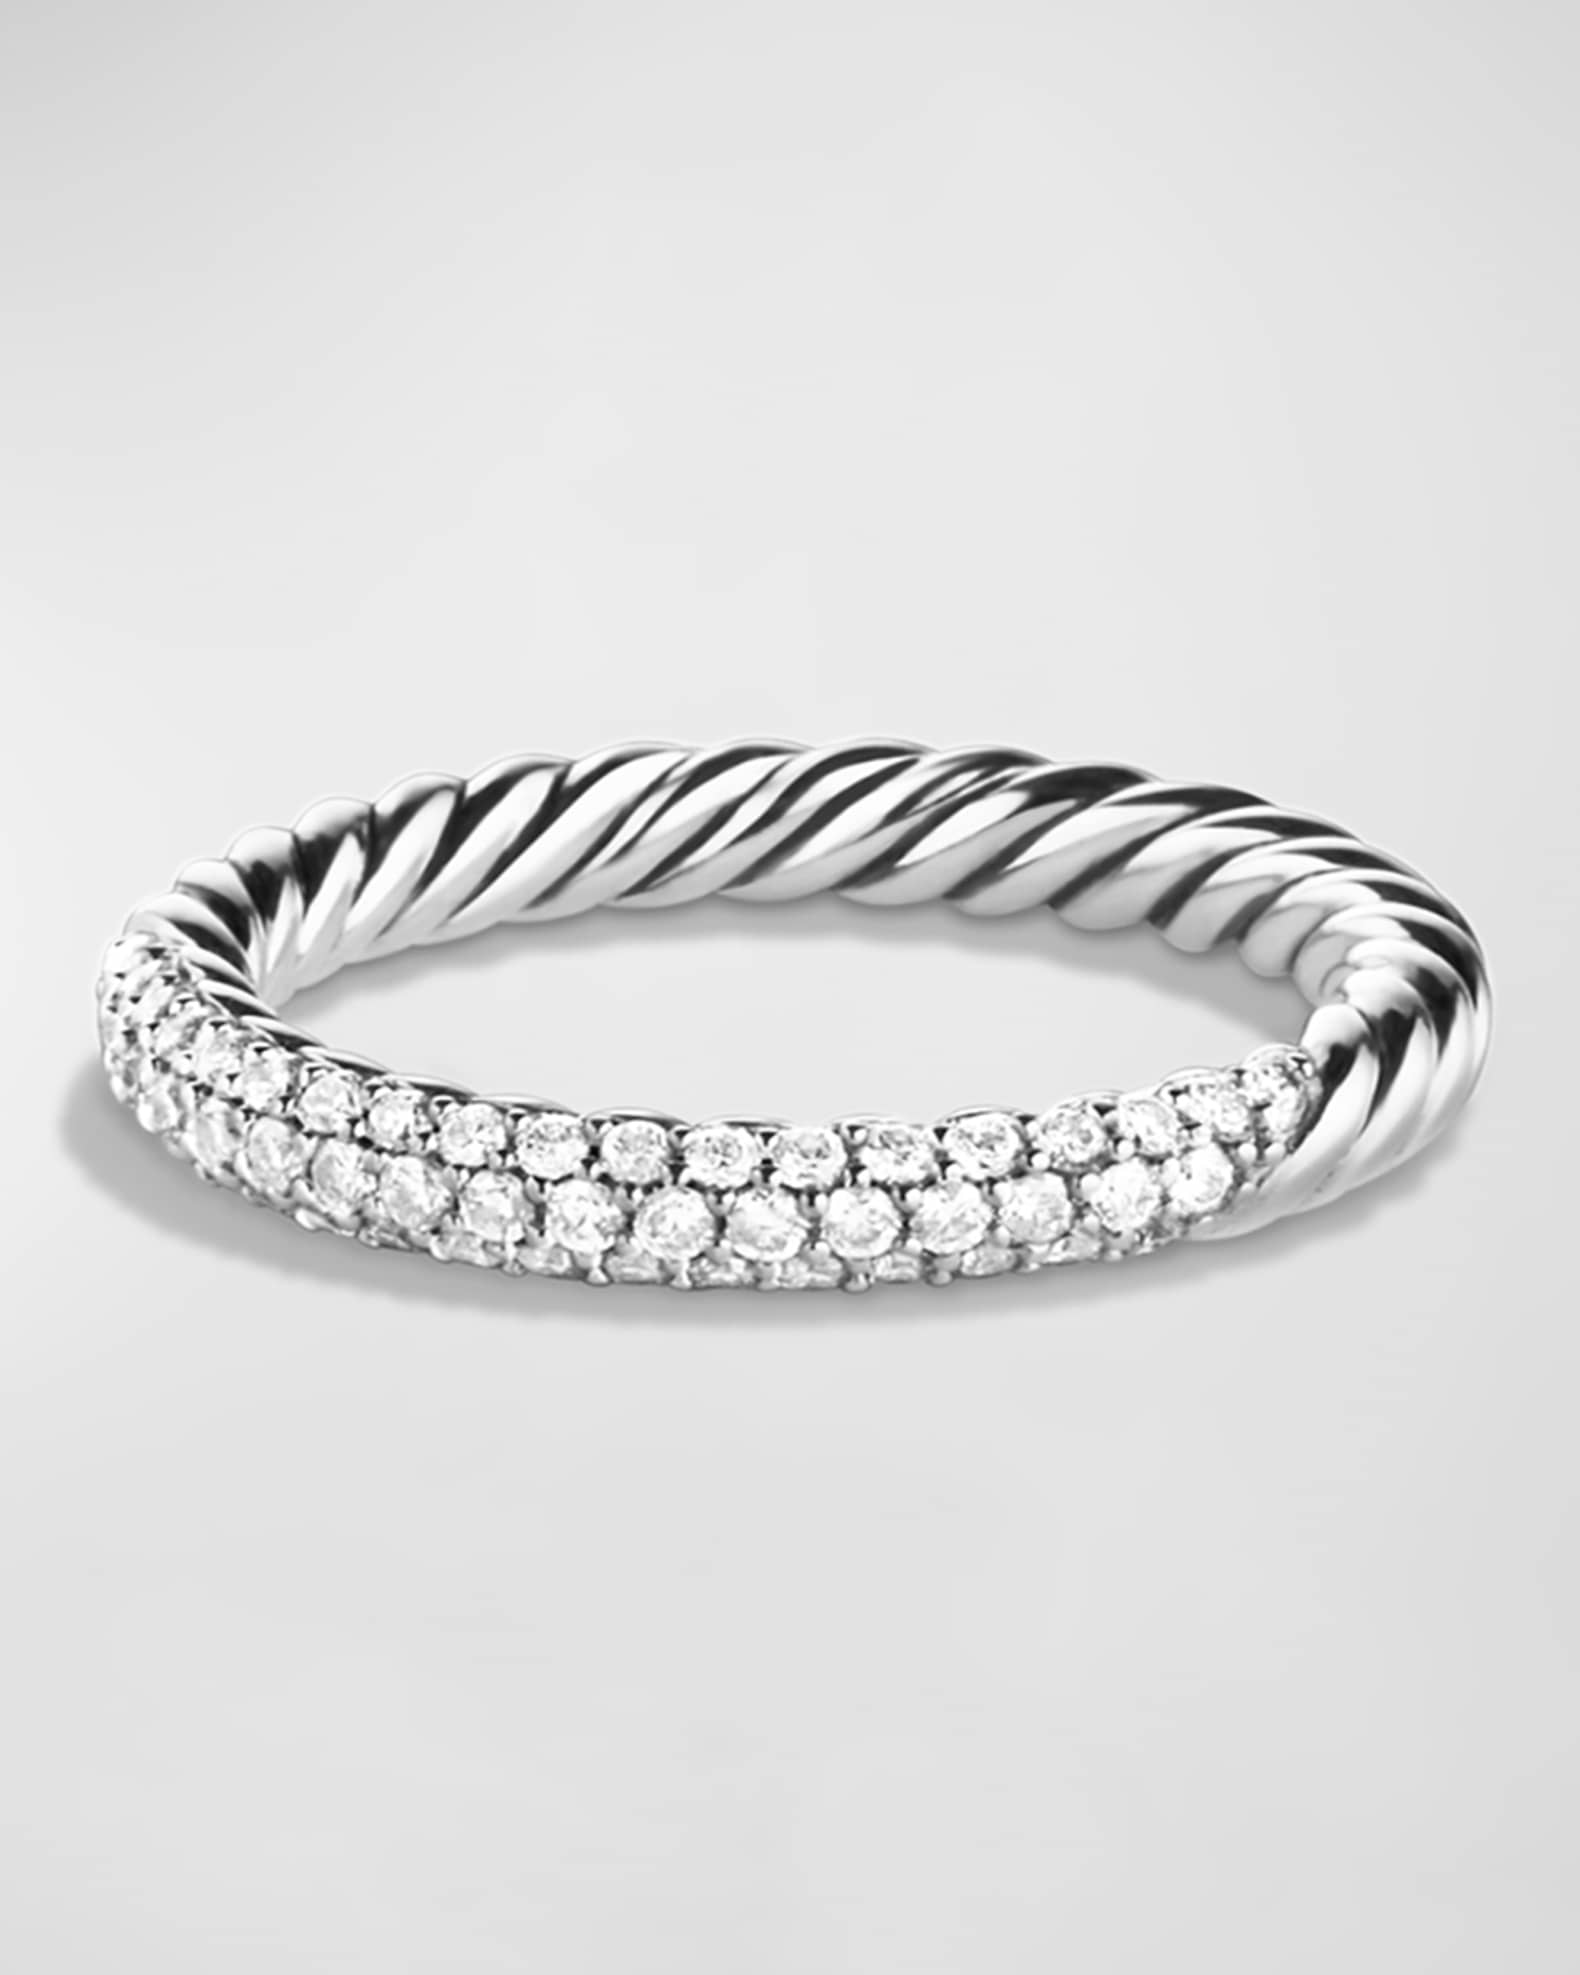 David Yurman Petite Pave Ring with Diamonds | Neiman Marcus